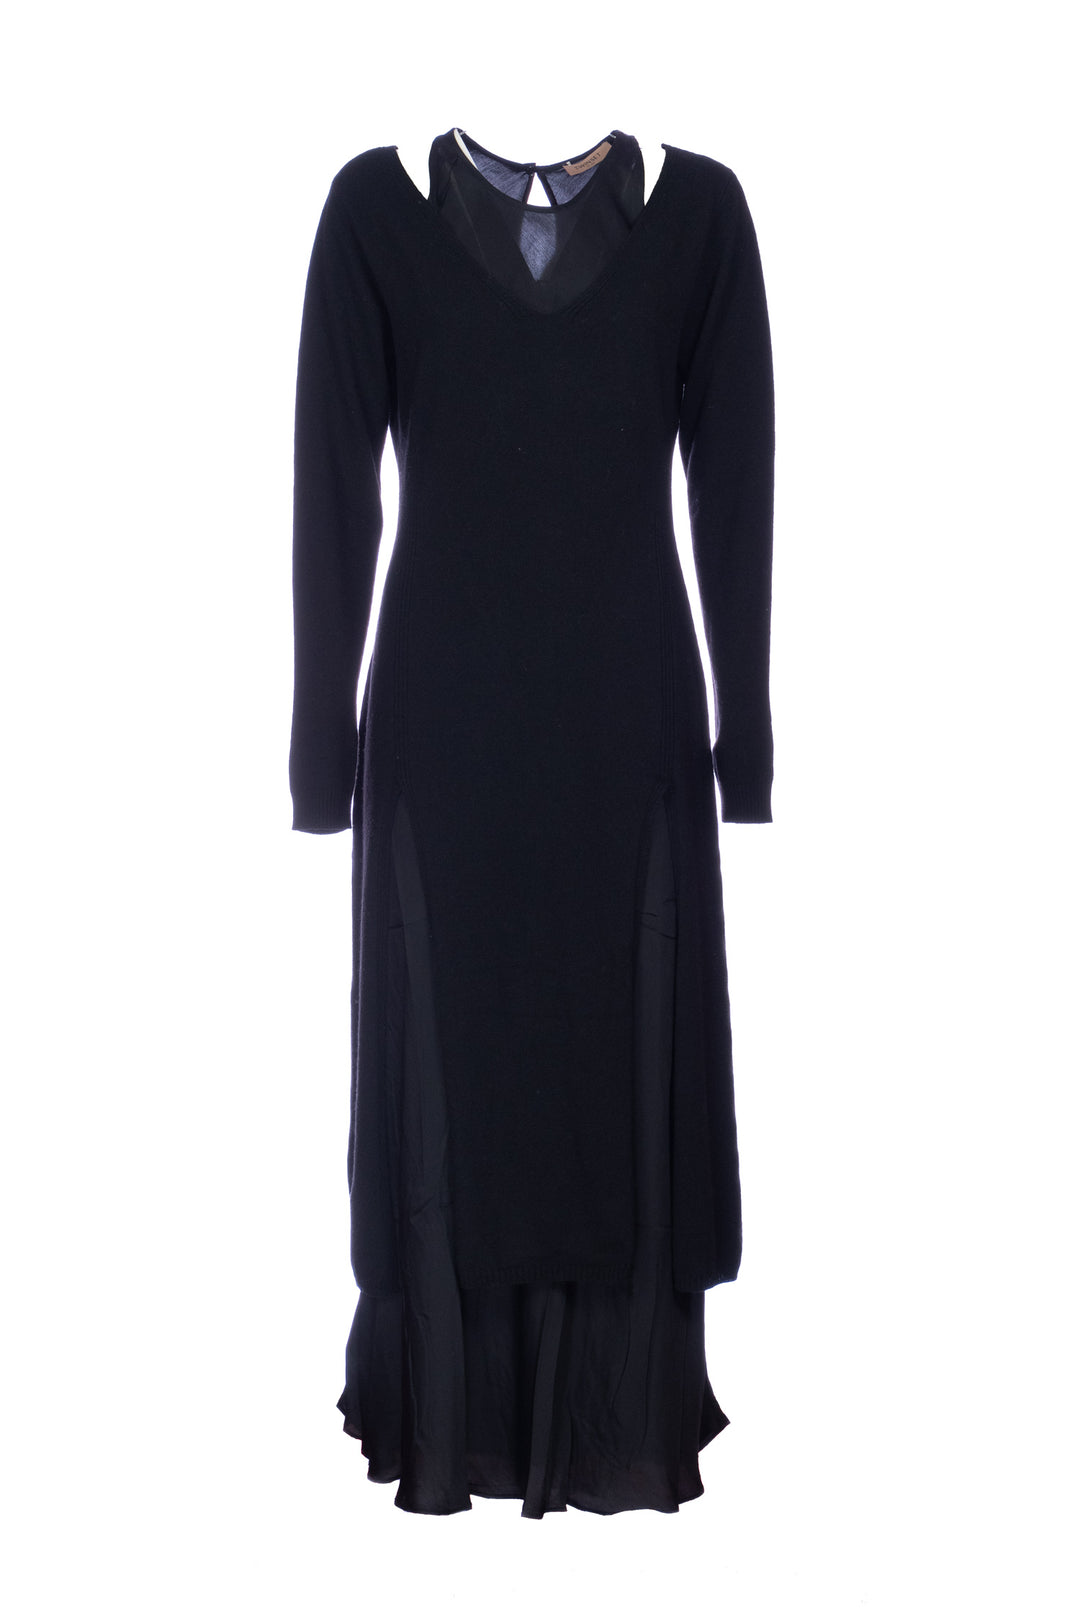 TWINSET Maxi maglia nera in misto lana e abito lungo in satin - Mancinelli 1954